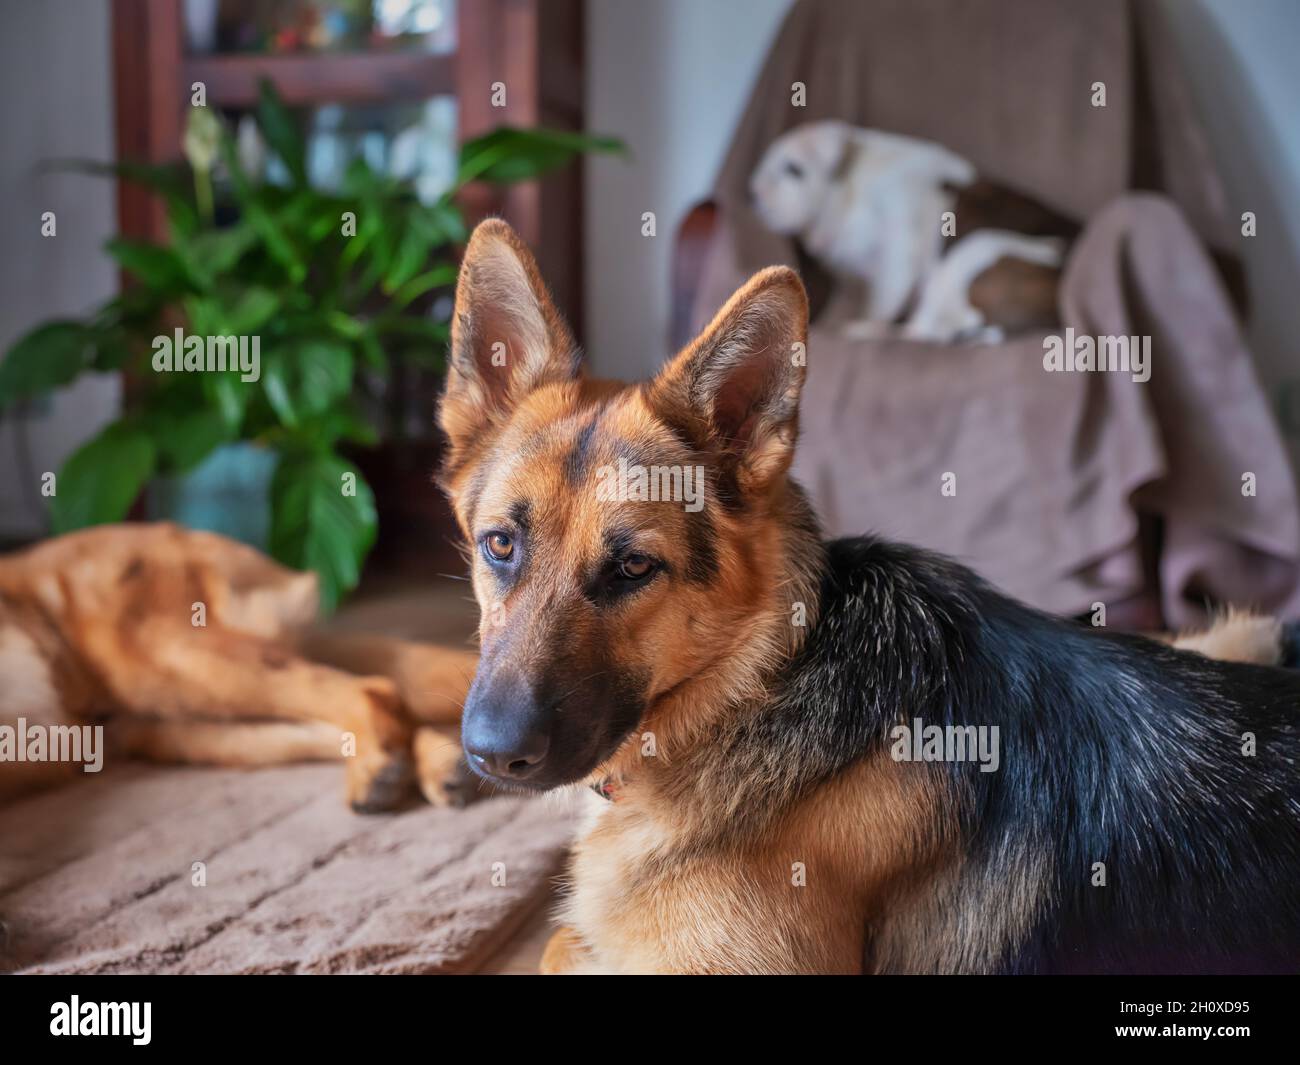 Il pastore tedesco guarda la macchina fotografica, sullo sfondo 2 cani, parte di un cane che si illumina pigramente. Vecchio bulldog inglese, fuori fuoco, dormire su un chai Foto Stock